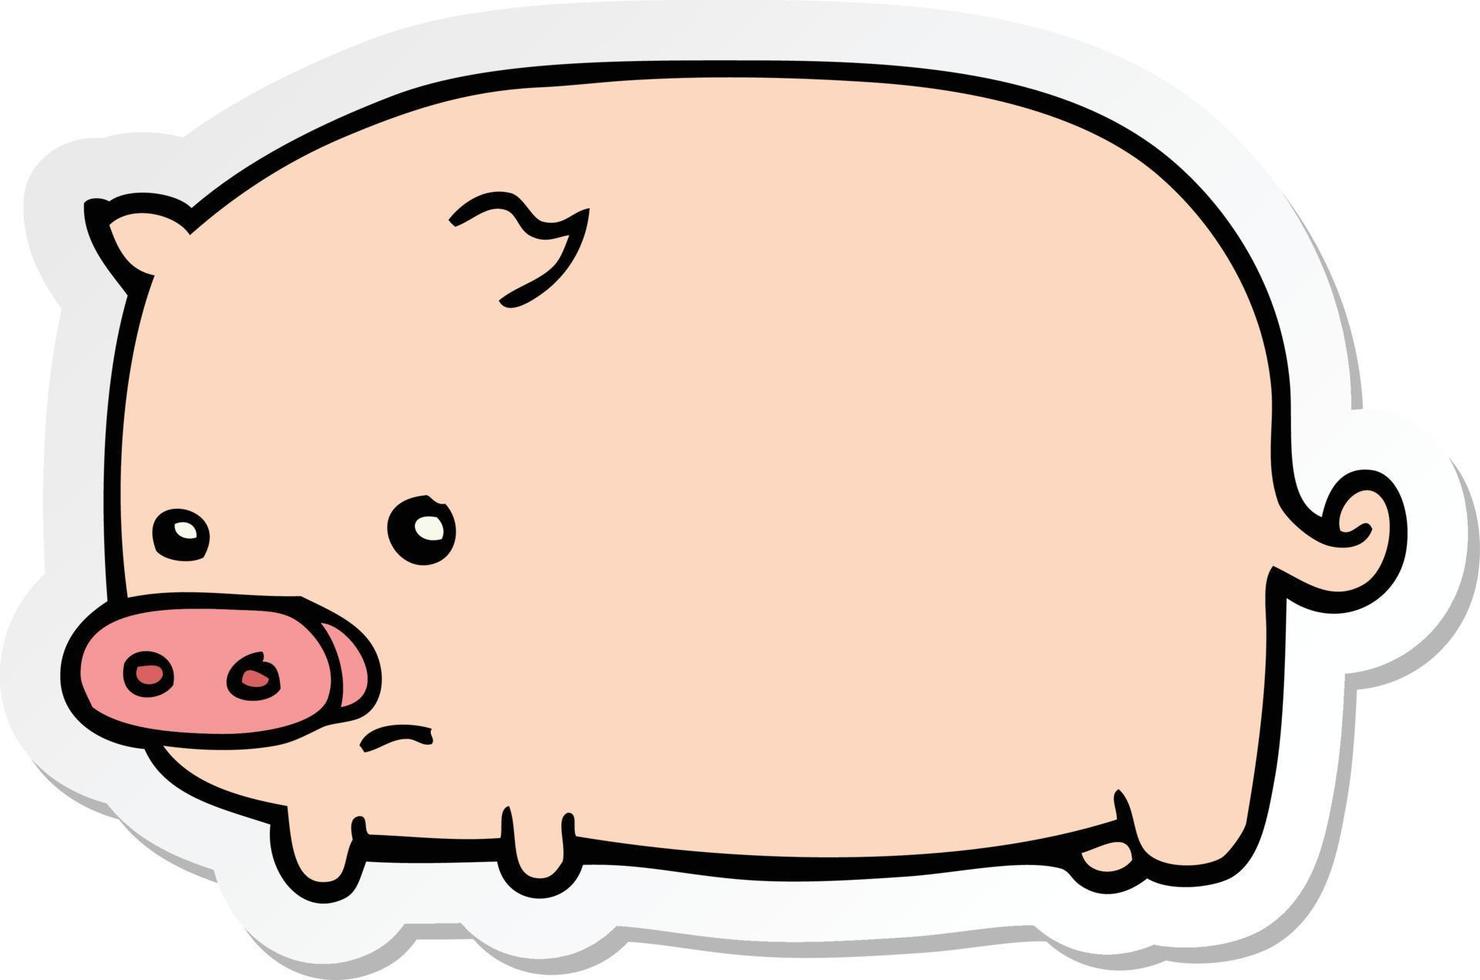 sticker of a cute cartoon pig vector